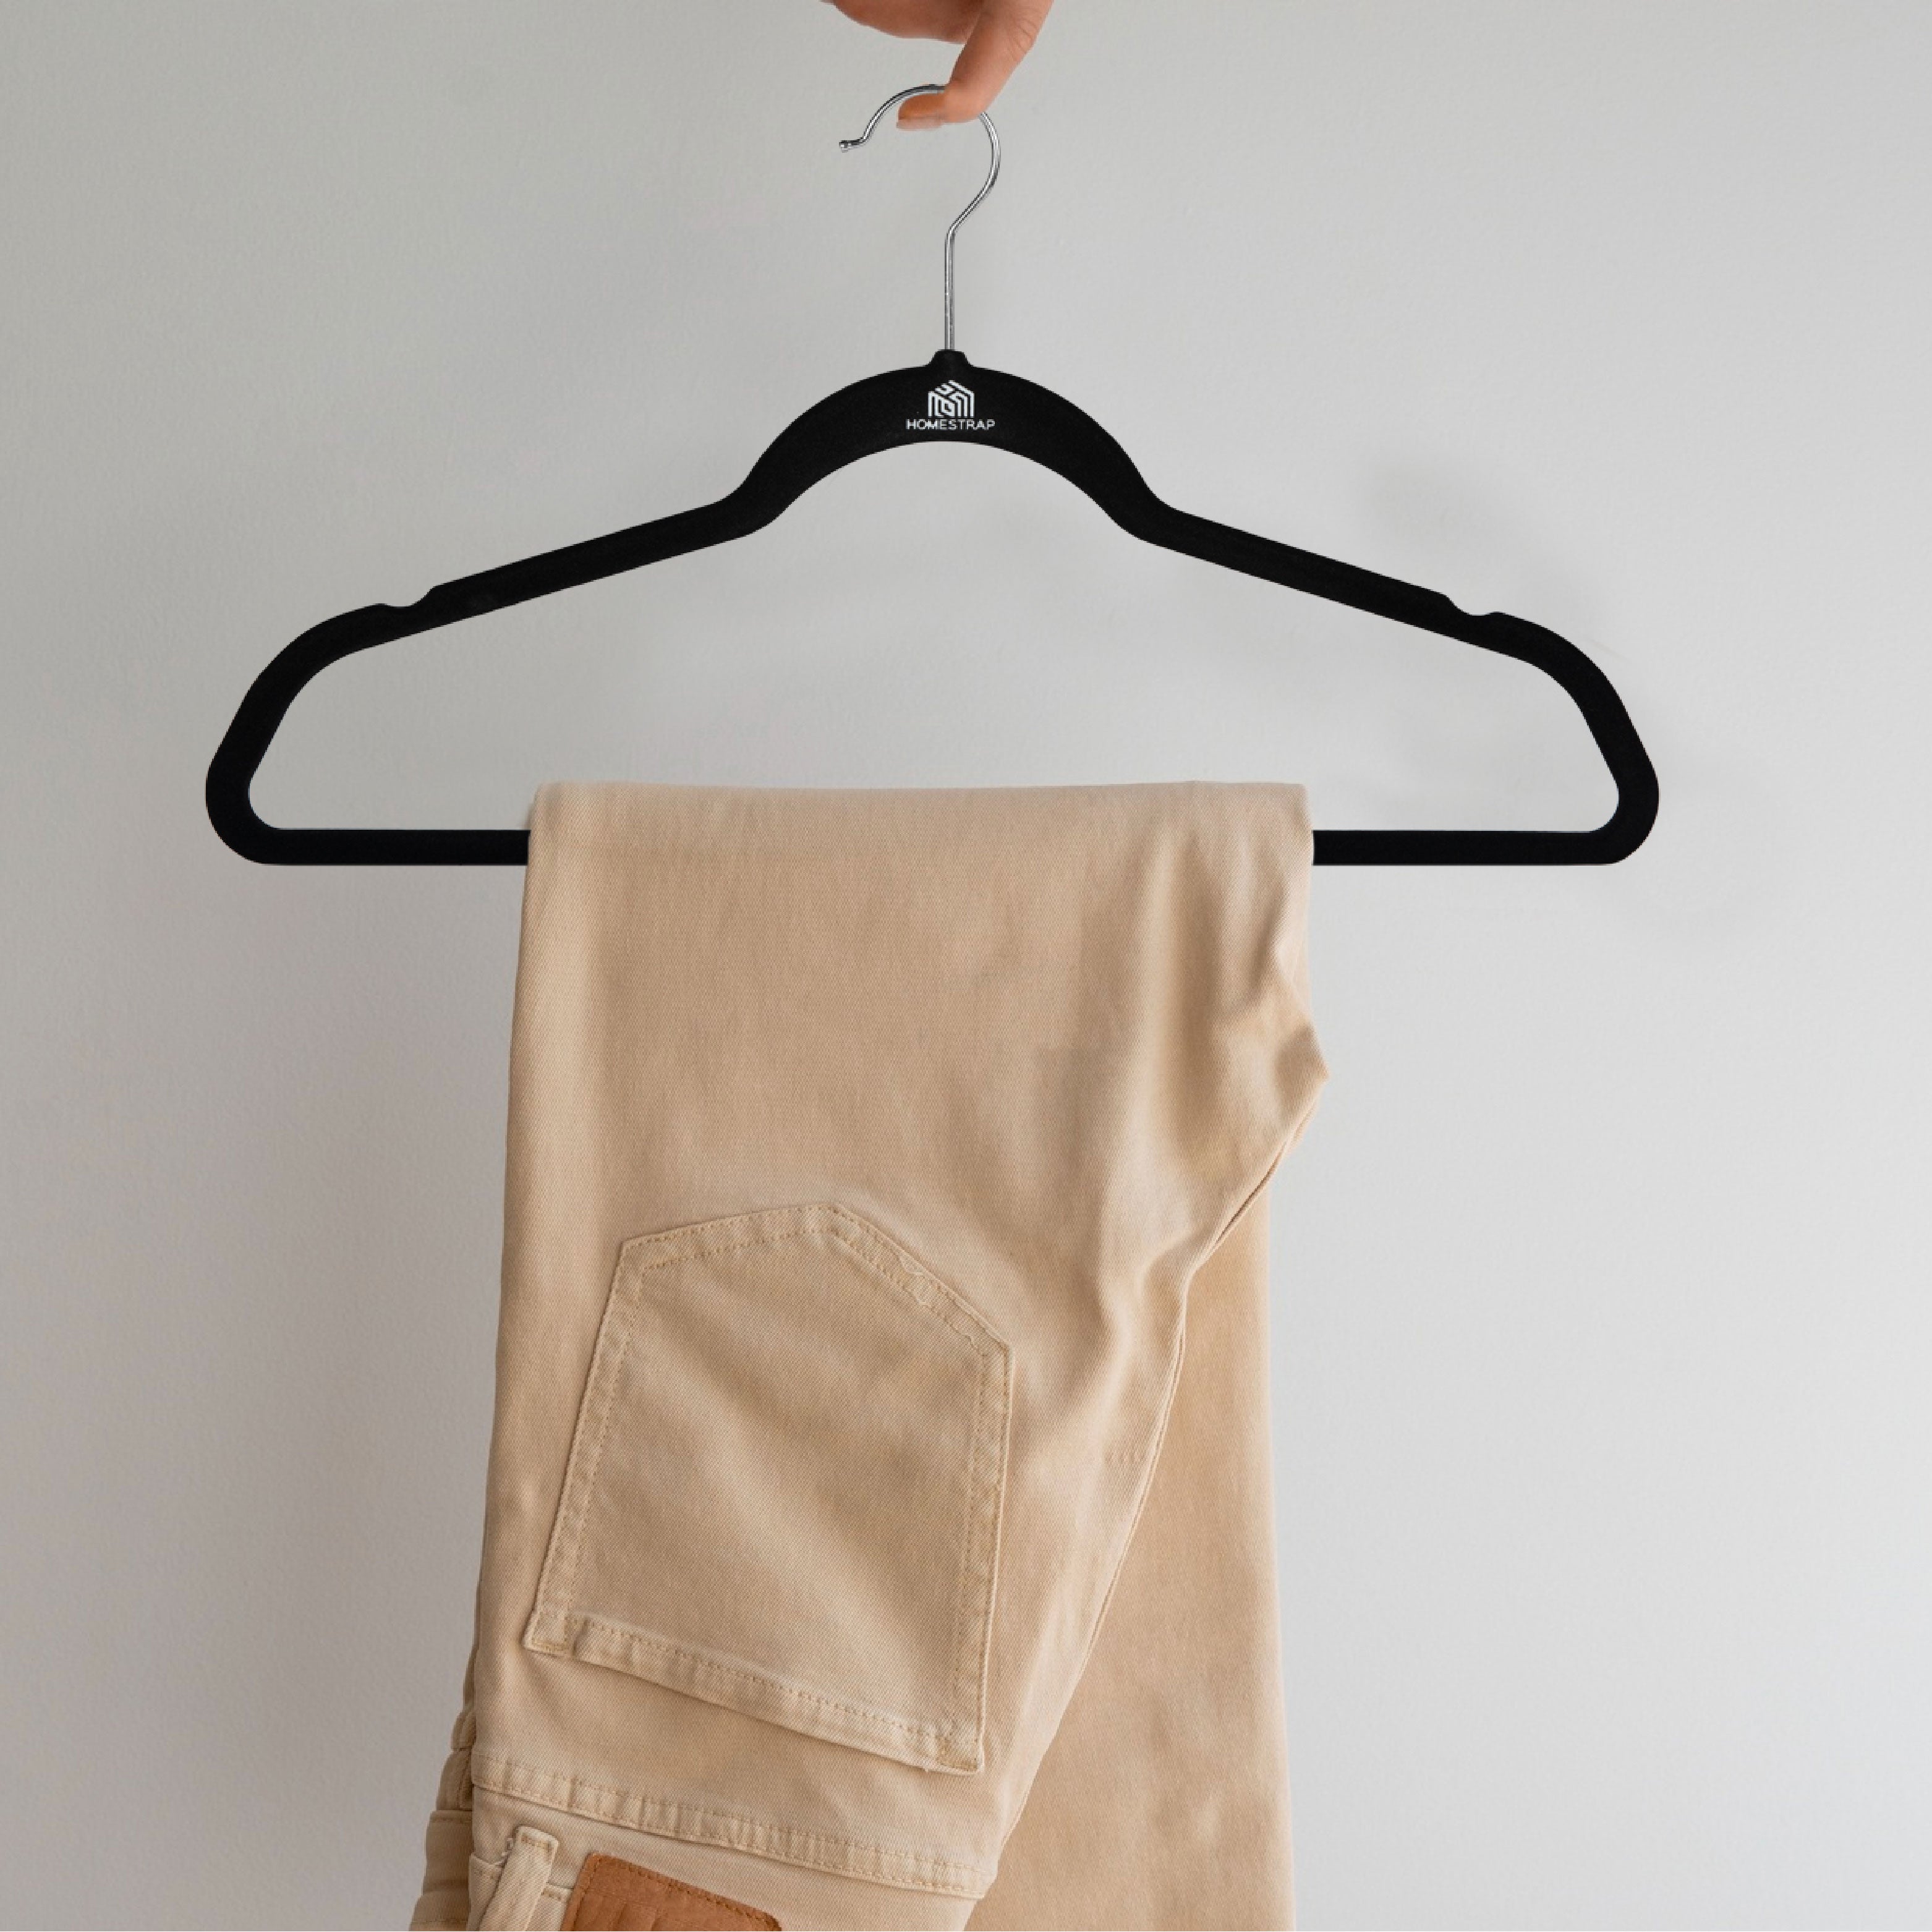 Velvet Anti-Slip Hanger | Ultra Thin Velvet Hanger